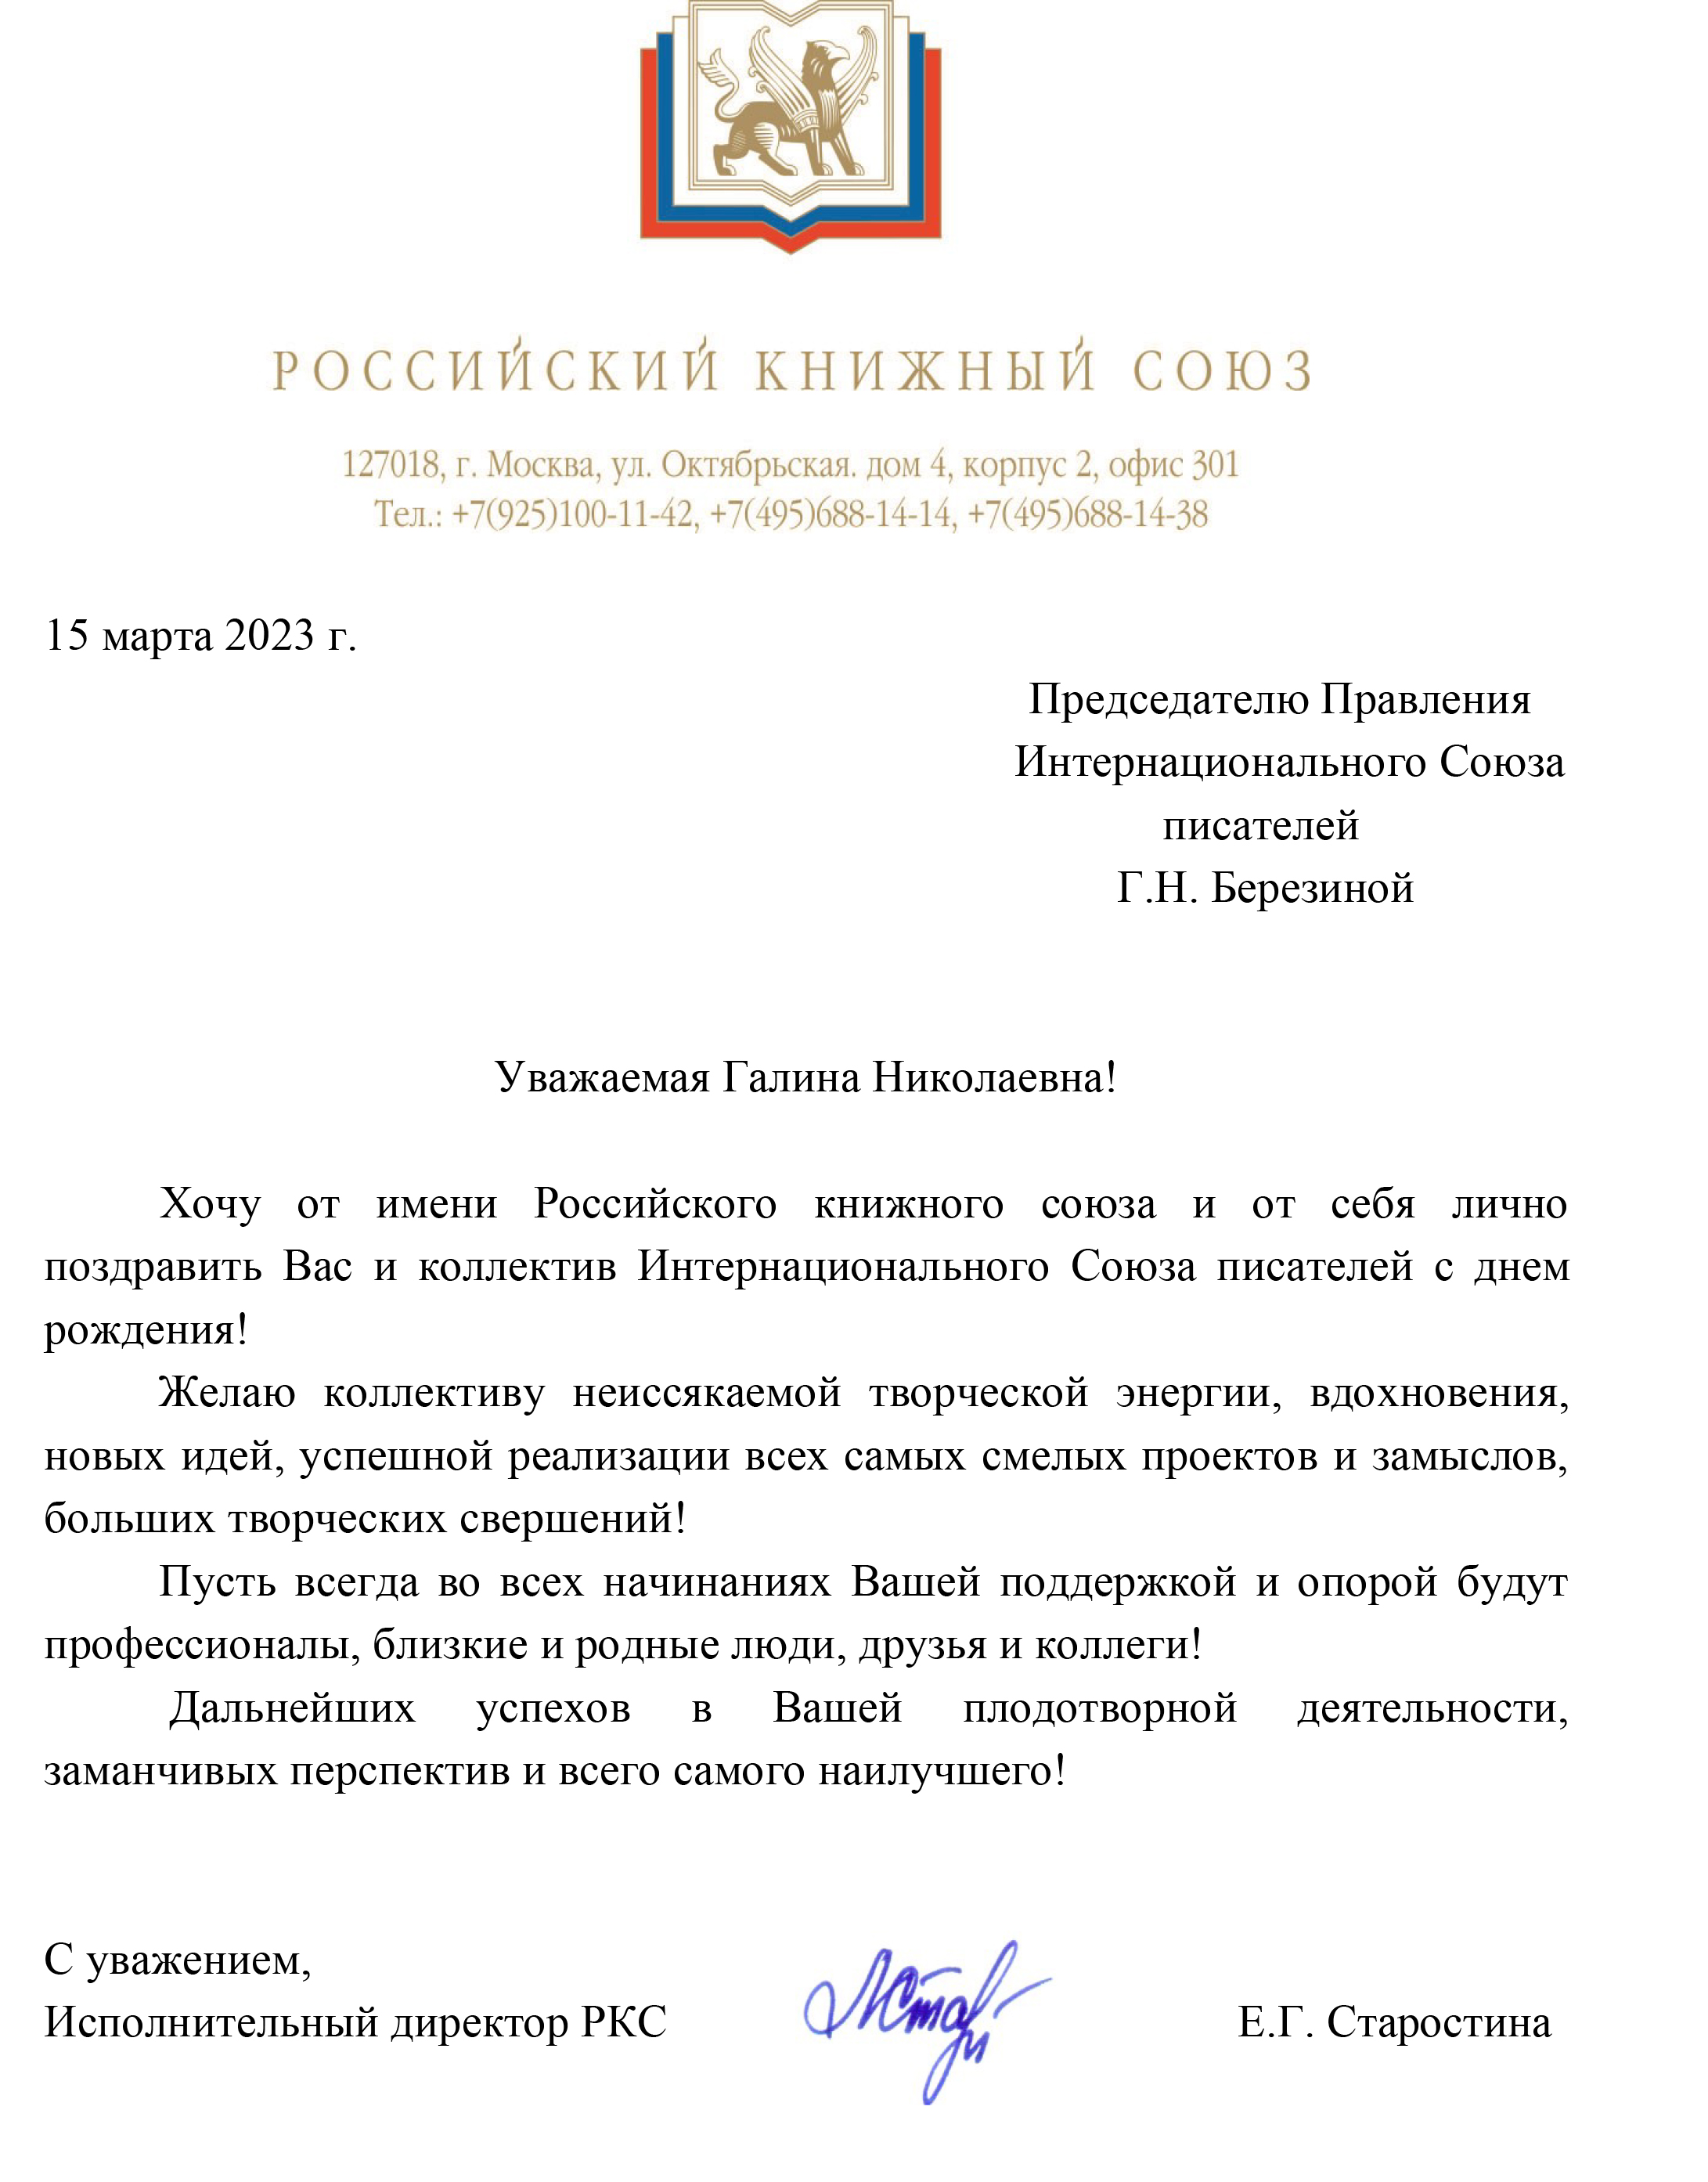 Поздравление от Российского книжного союза